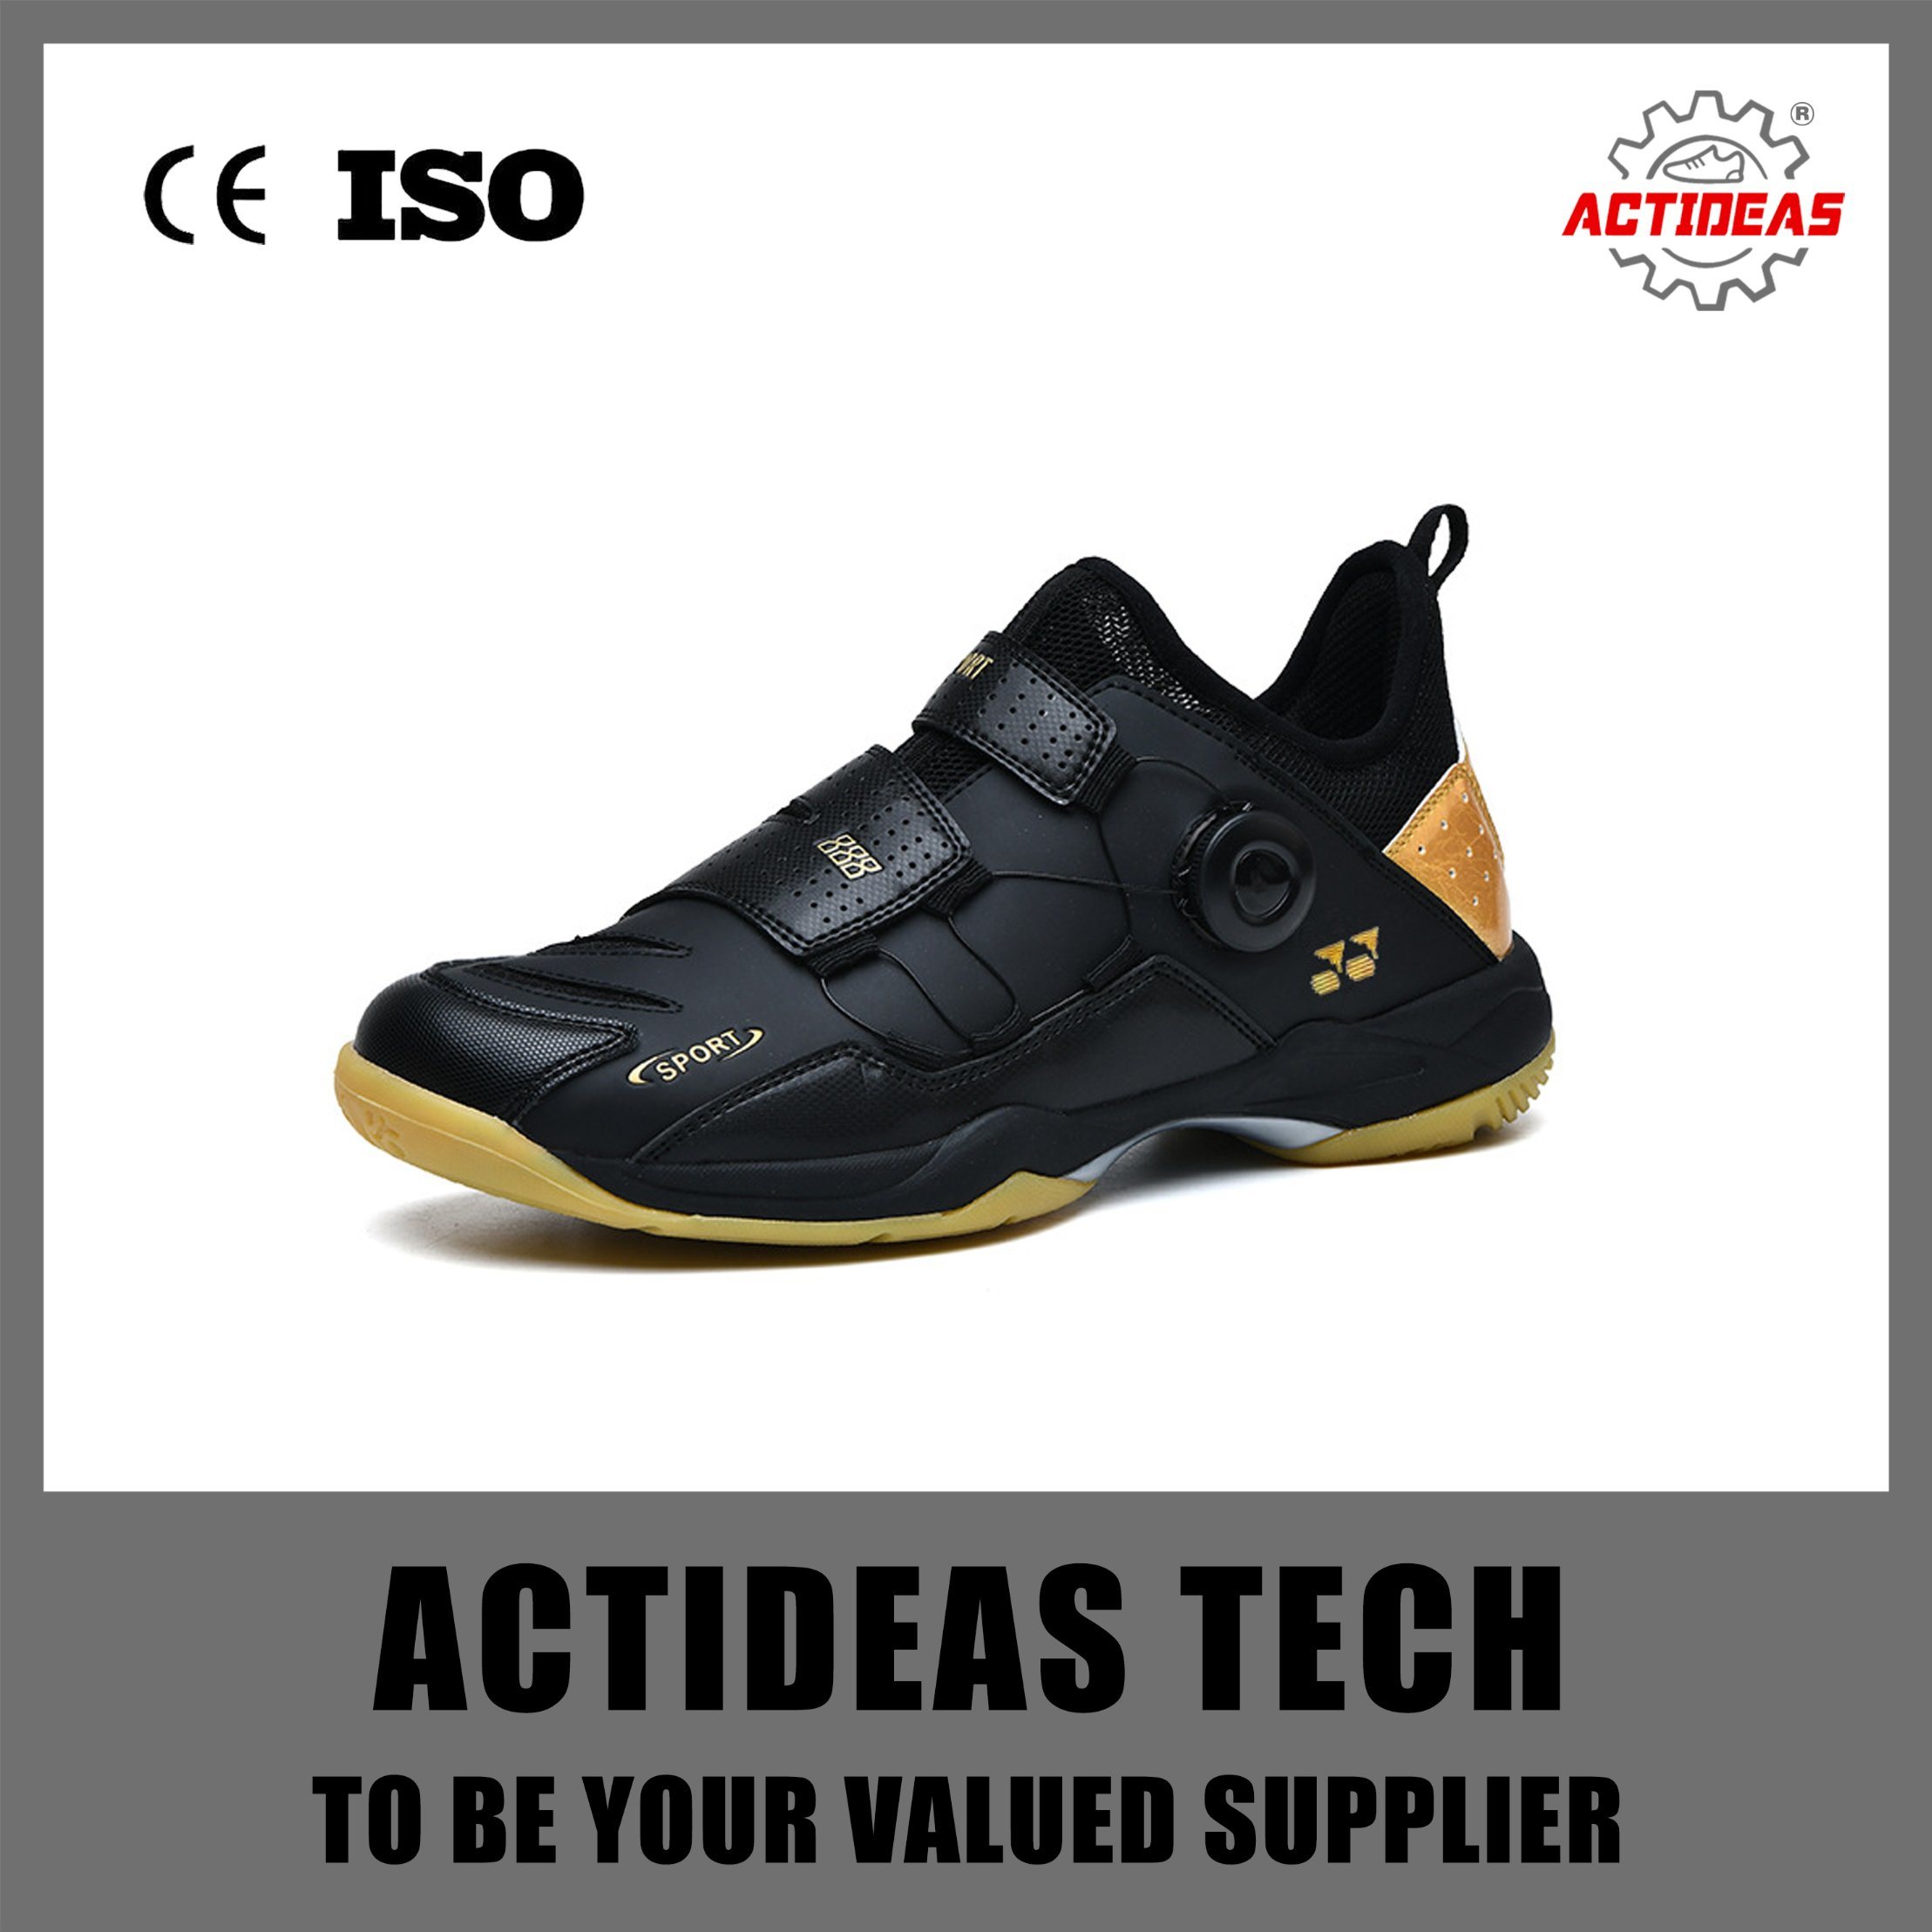 Wholesale Footwear Customize Composite Toe Badminton Sports Shoes